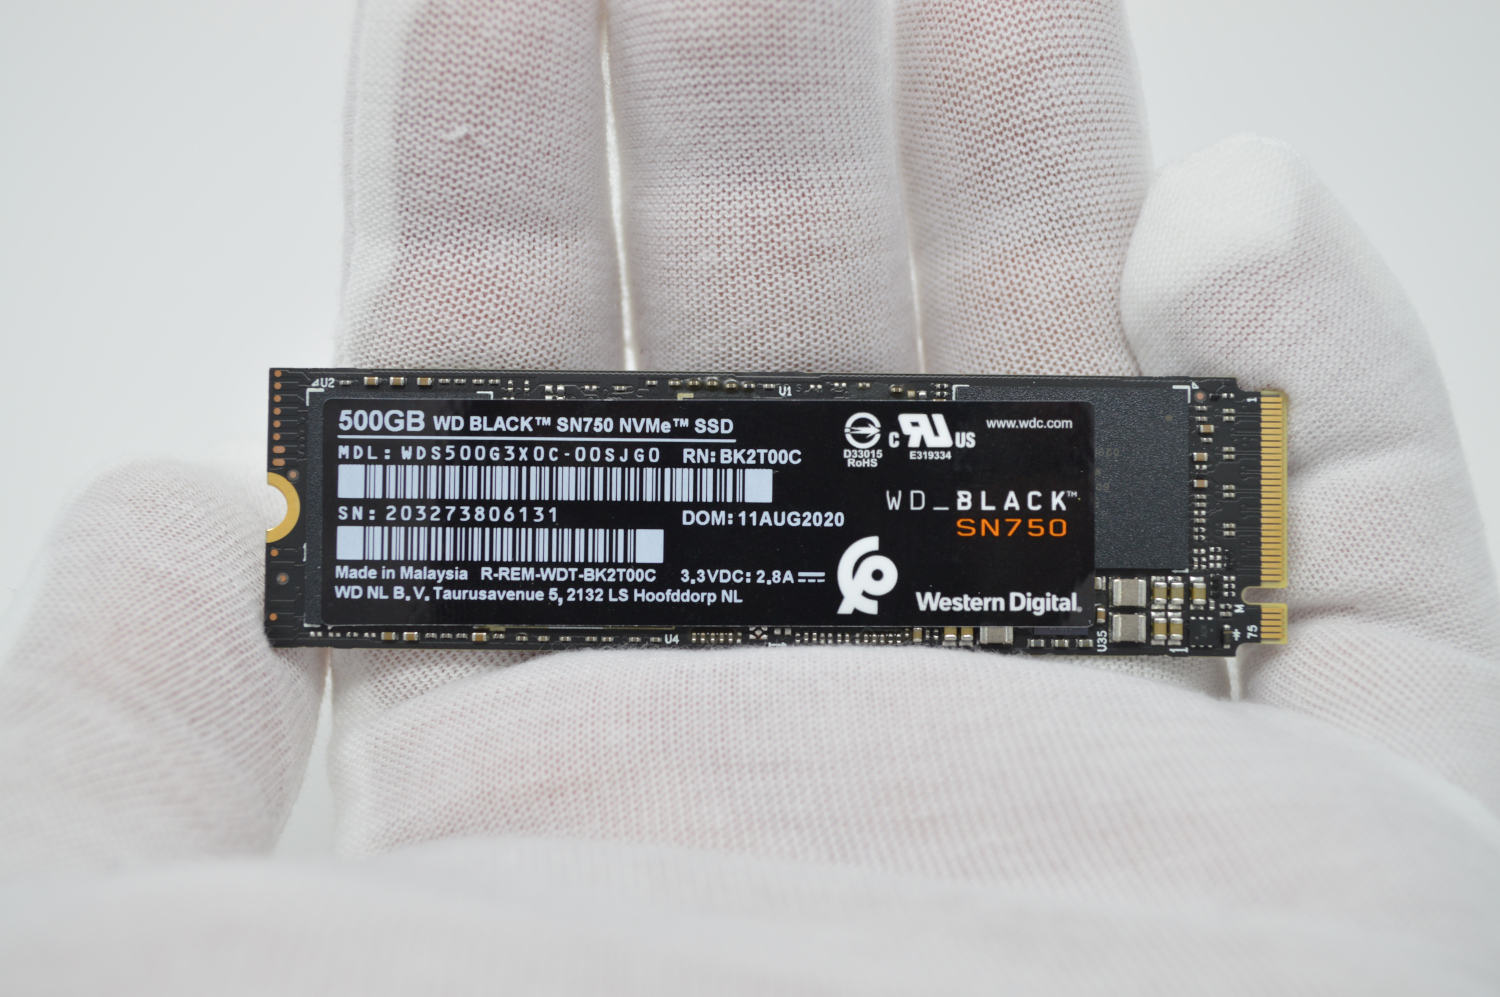 WD Black SN750 500GB NVMe SSD Review ServeTheHome